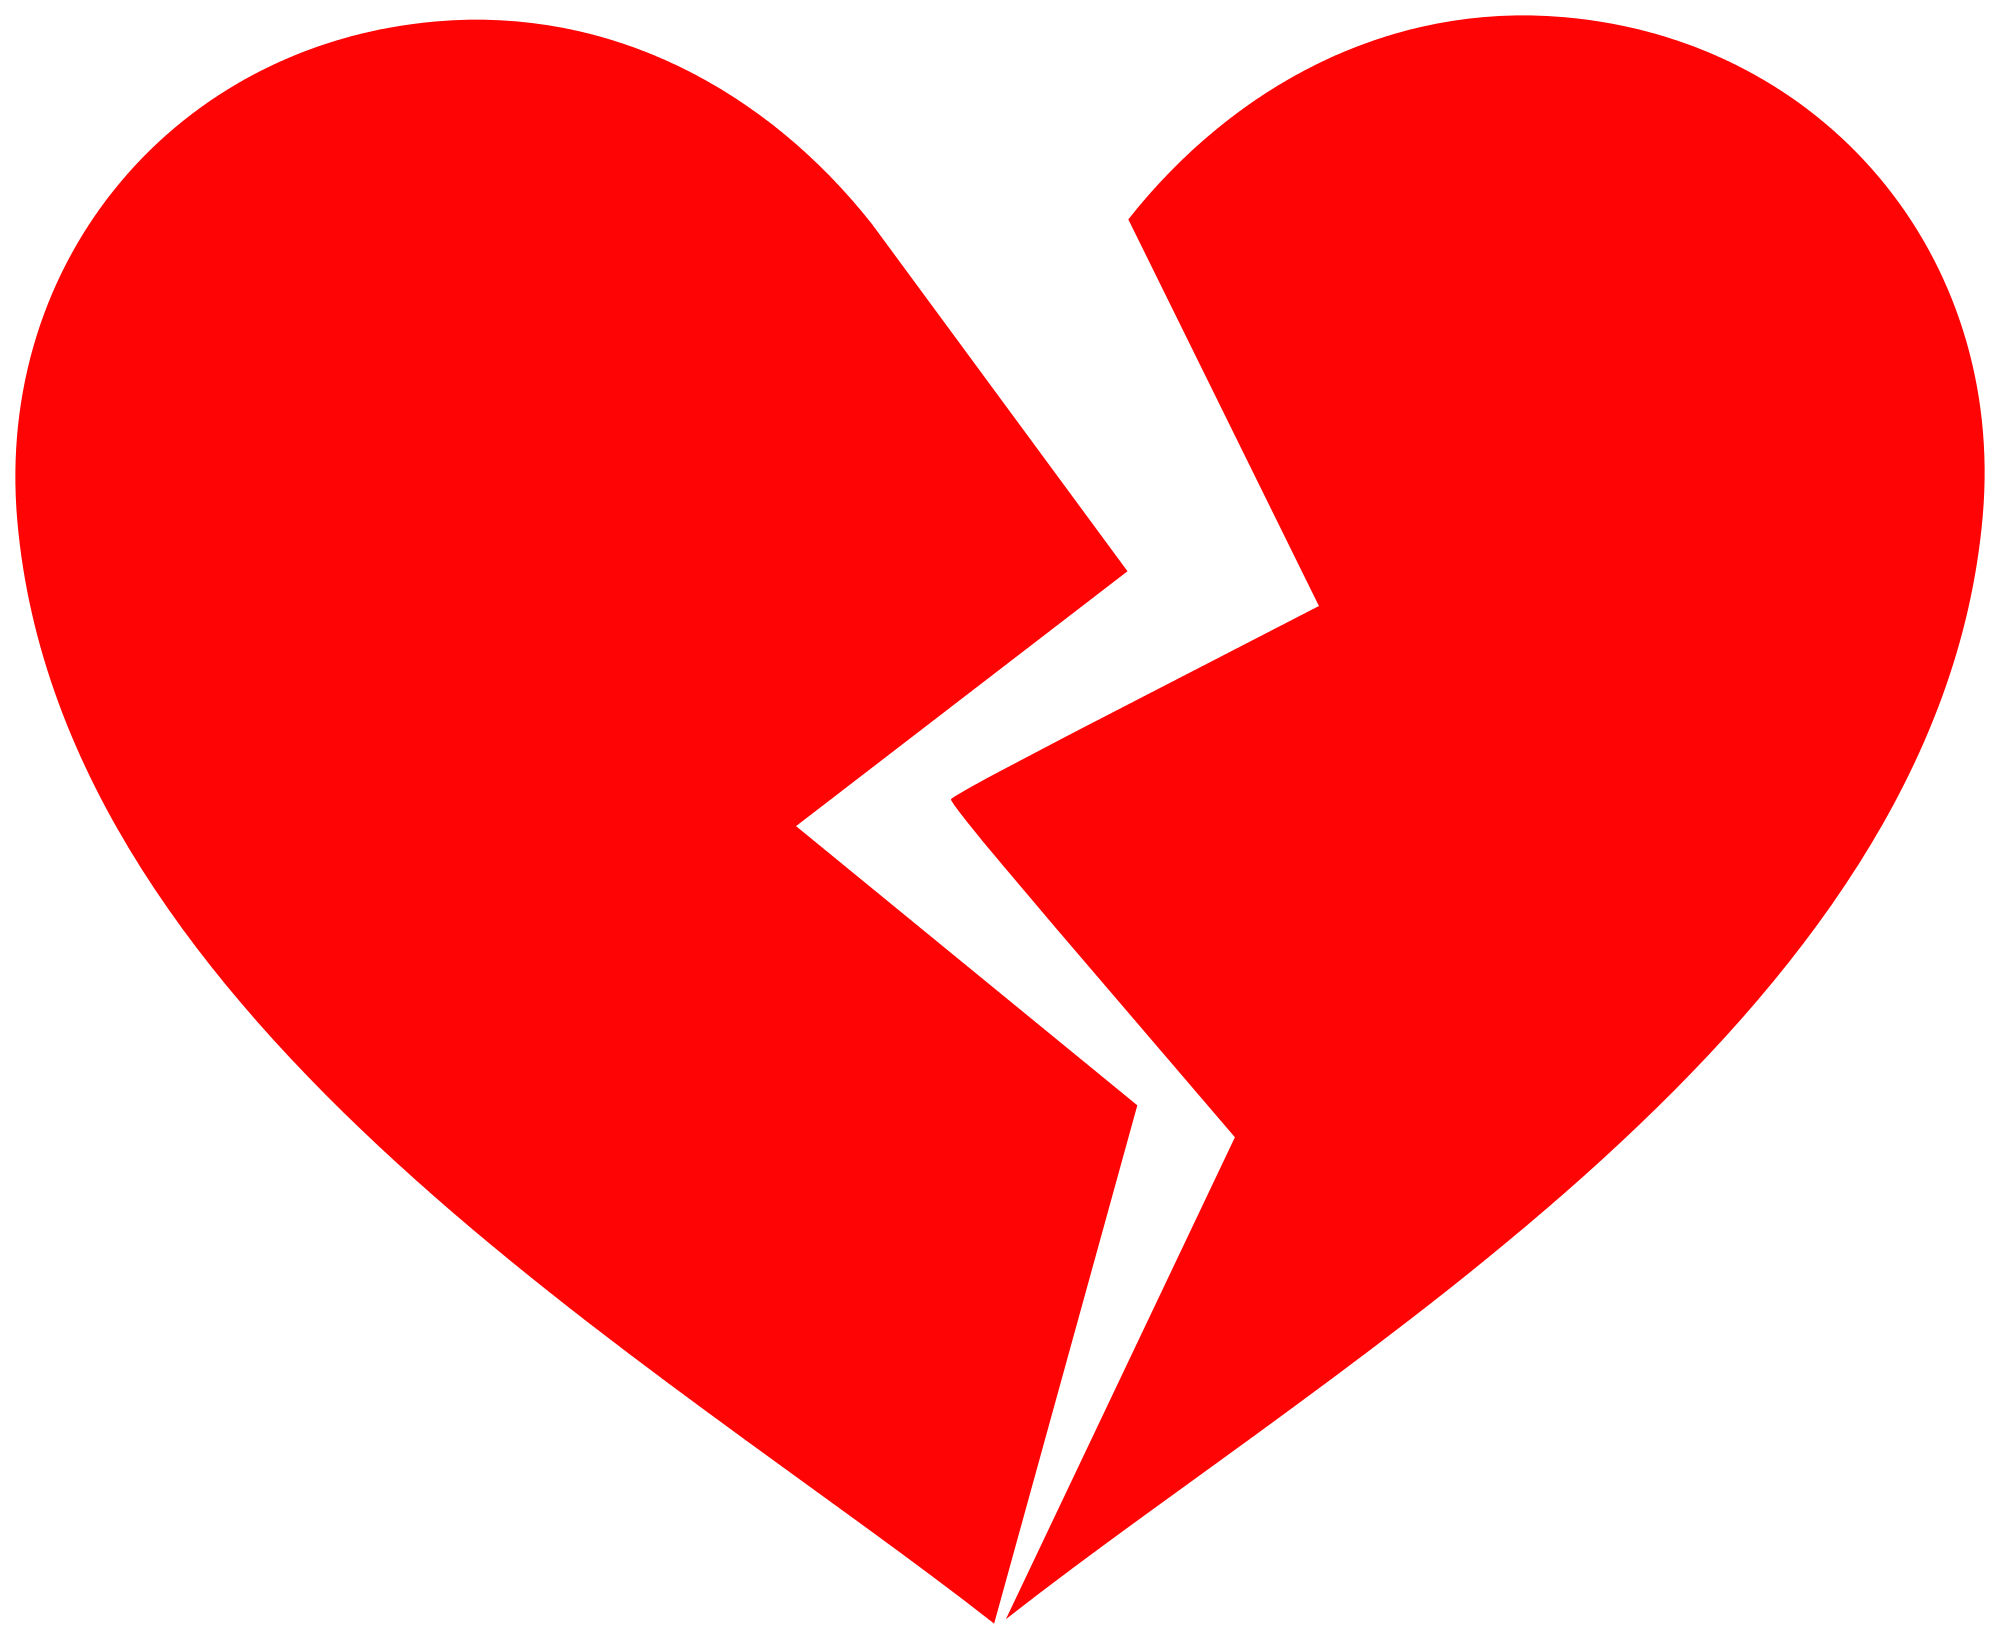 File:Broken heart - Wikimedia Commons